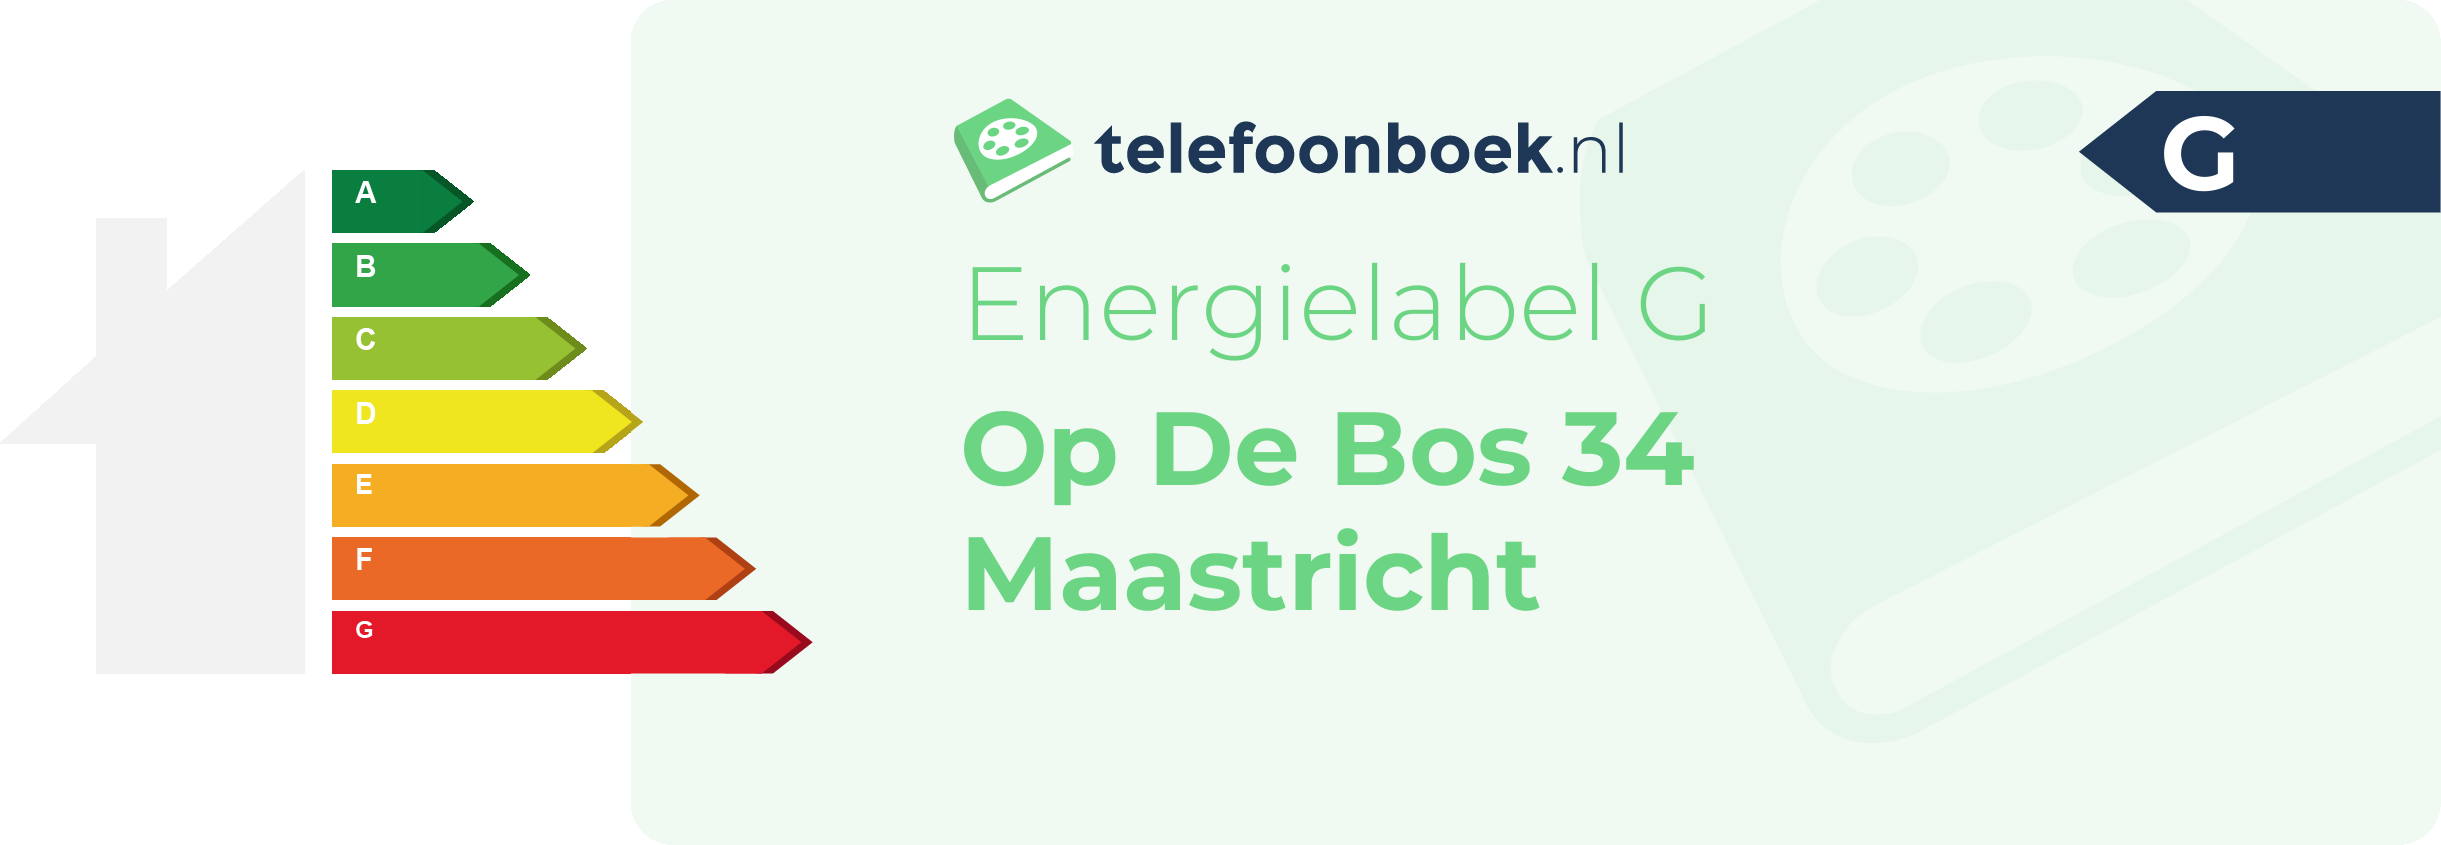 Energielabel Op De Bos 34 Maastricht